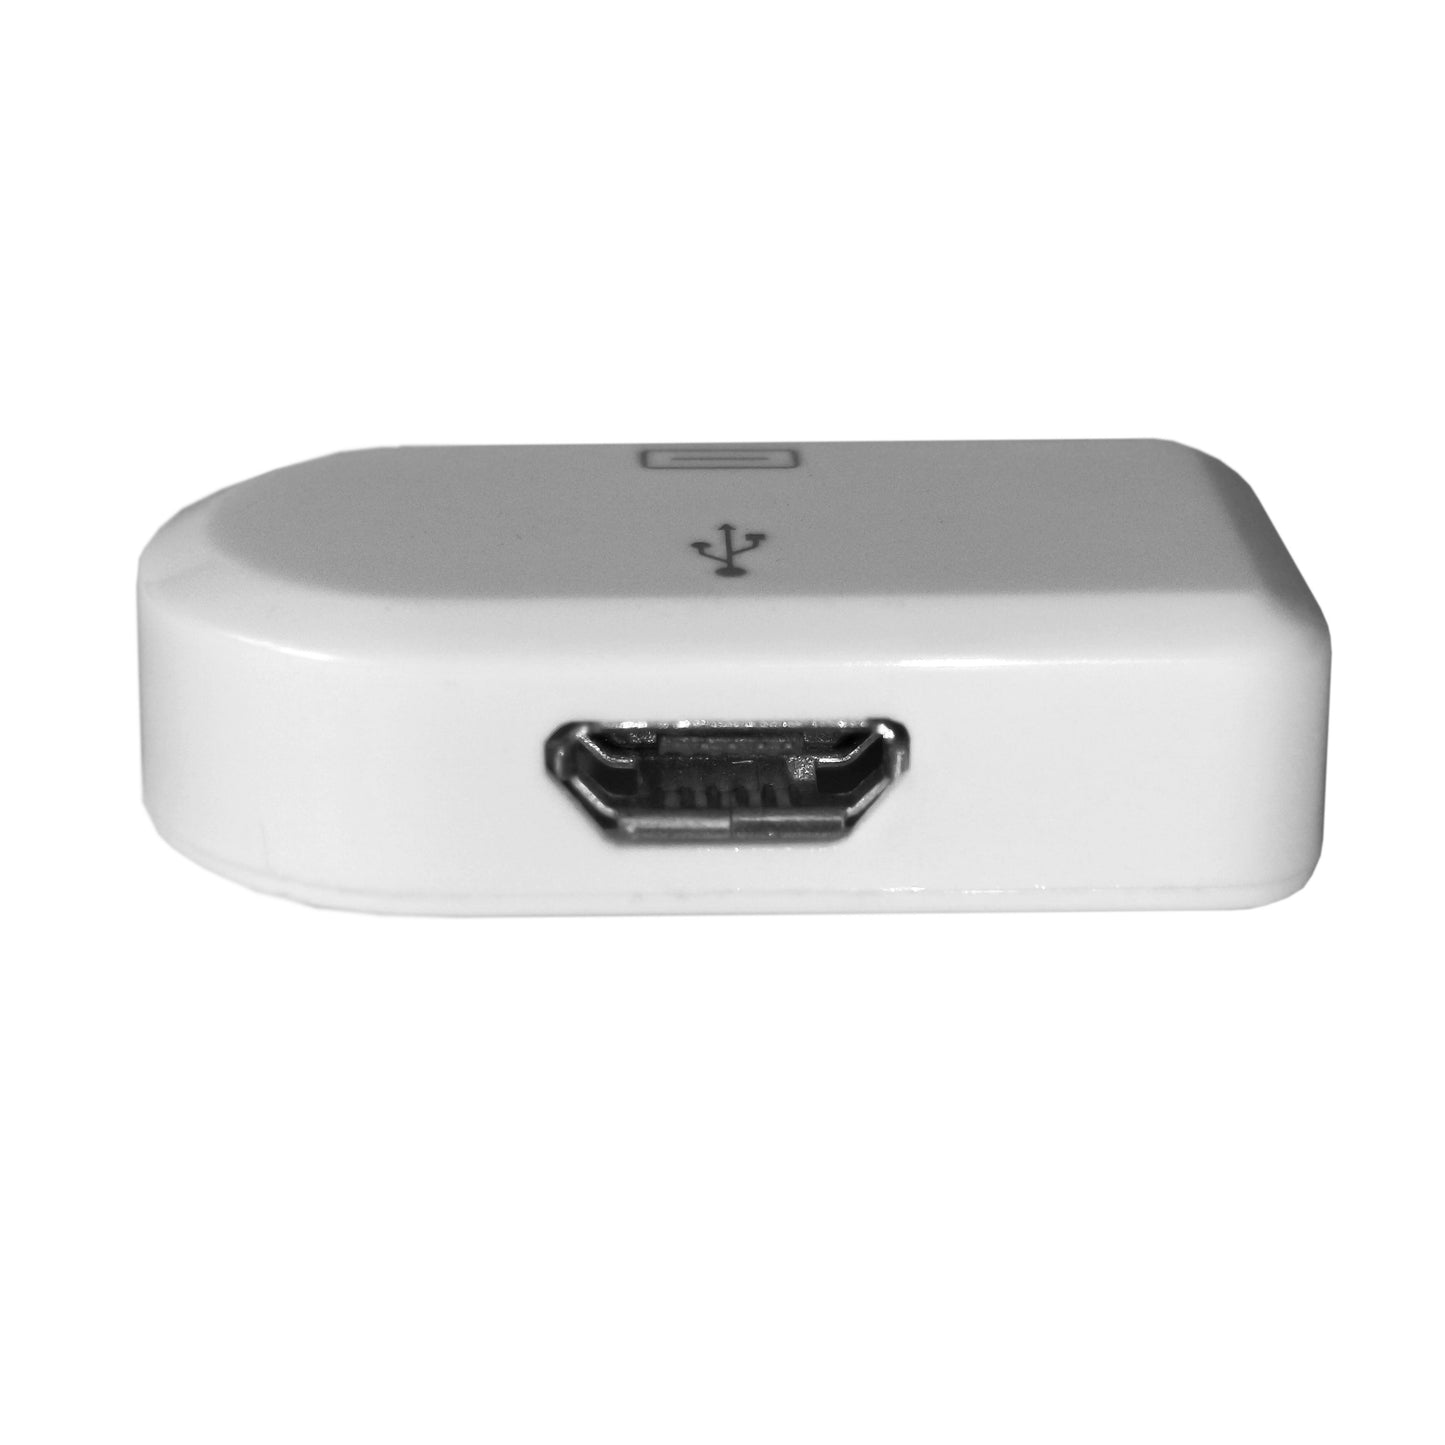 Adapter 30-Pin zu Micro USB Valueline Apple-kompatibel für iPhone iPad iPod Weiß